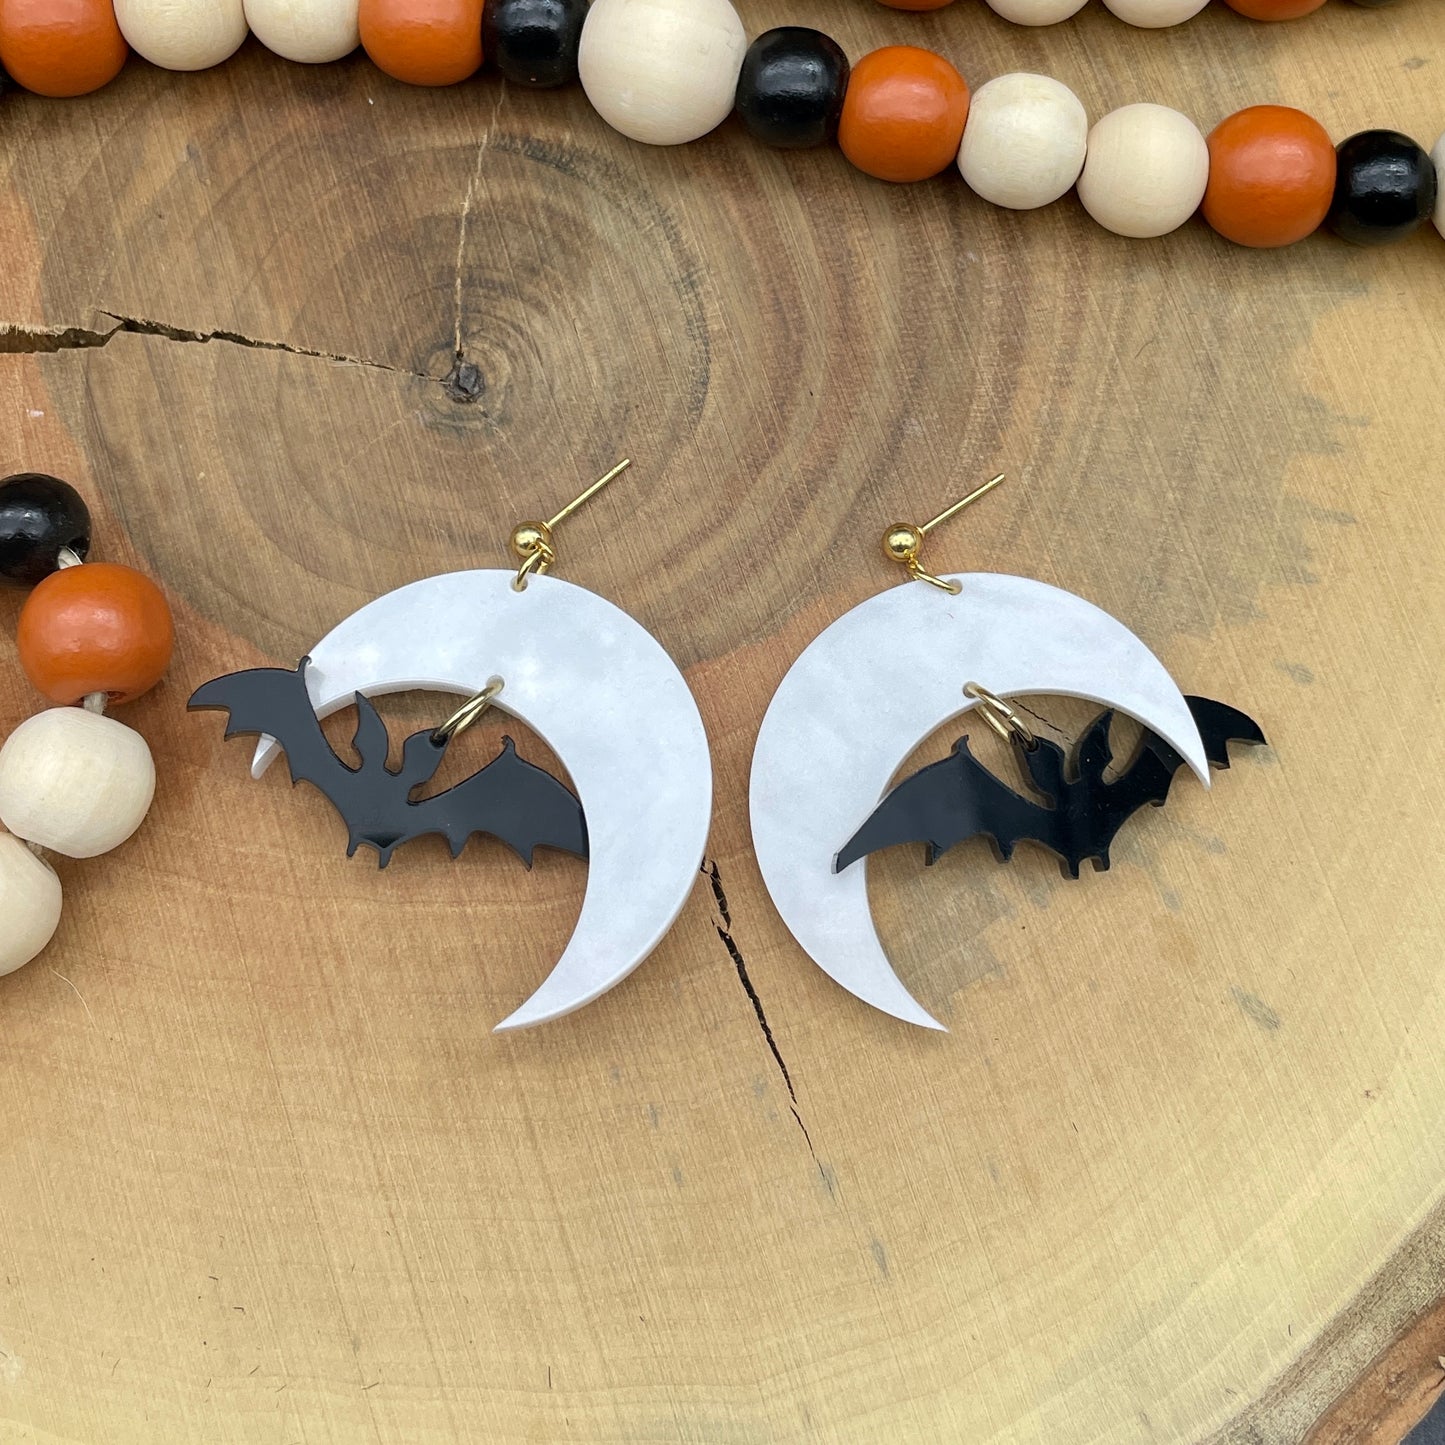 Bats Halloween earrings